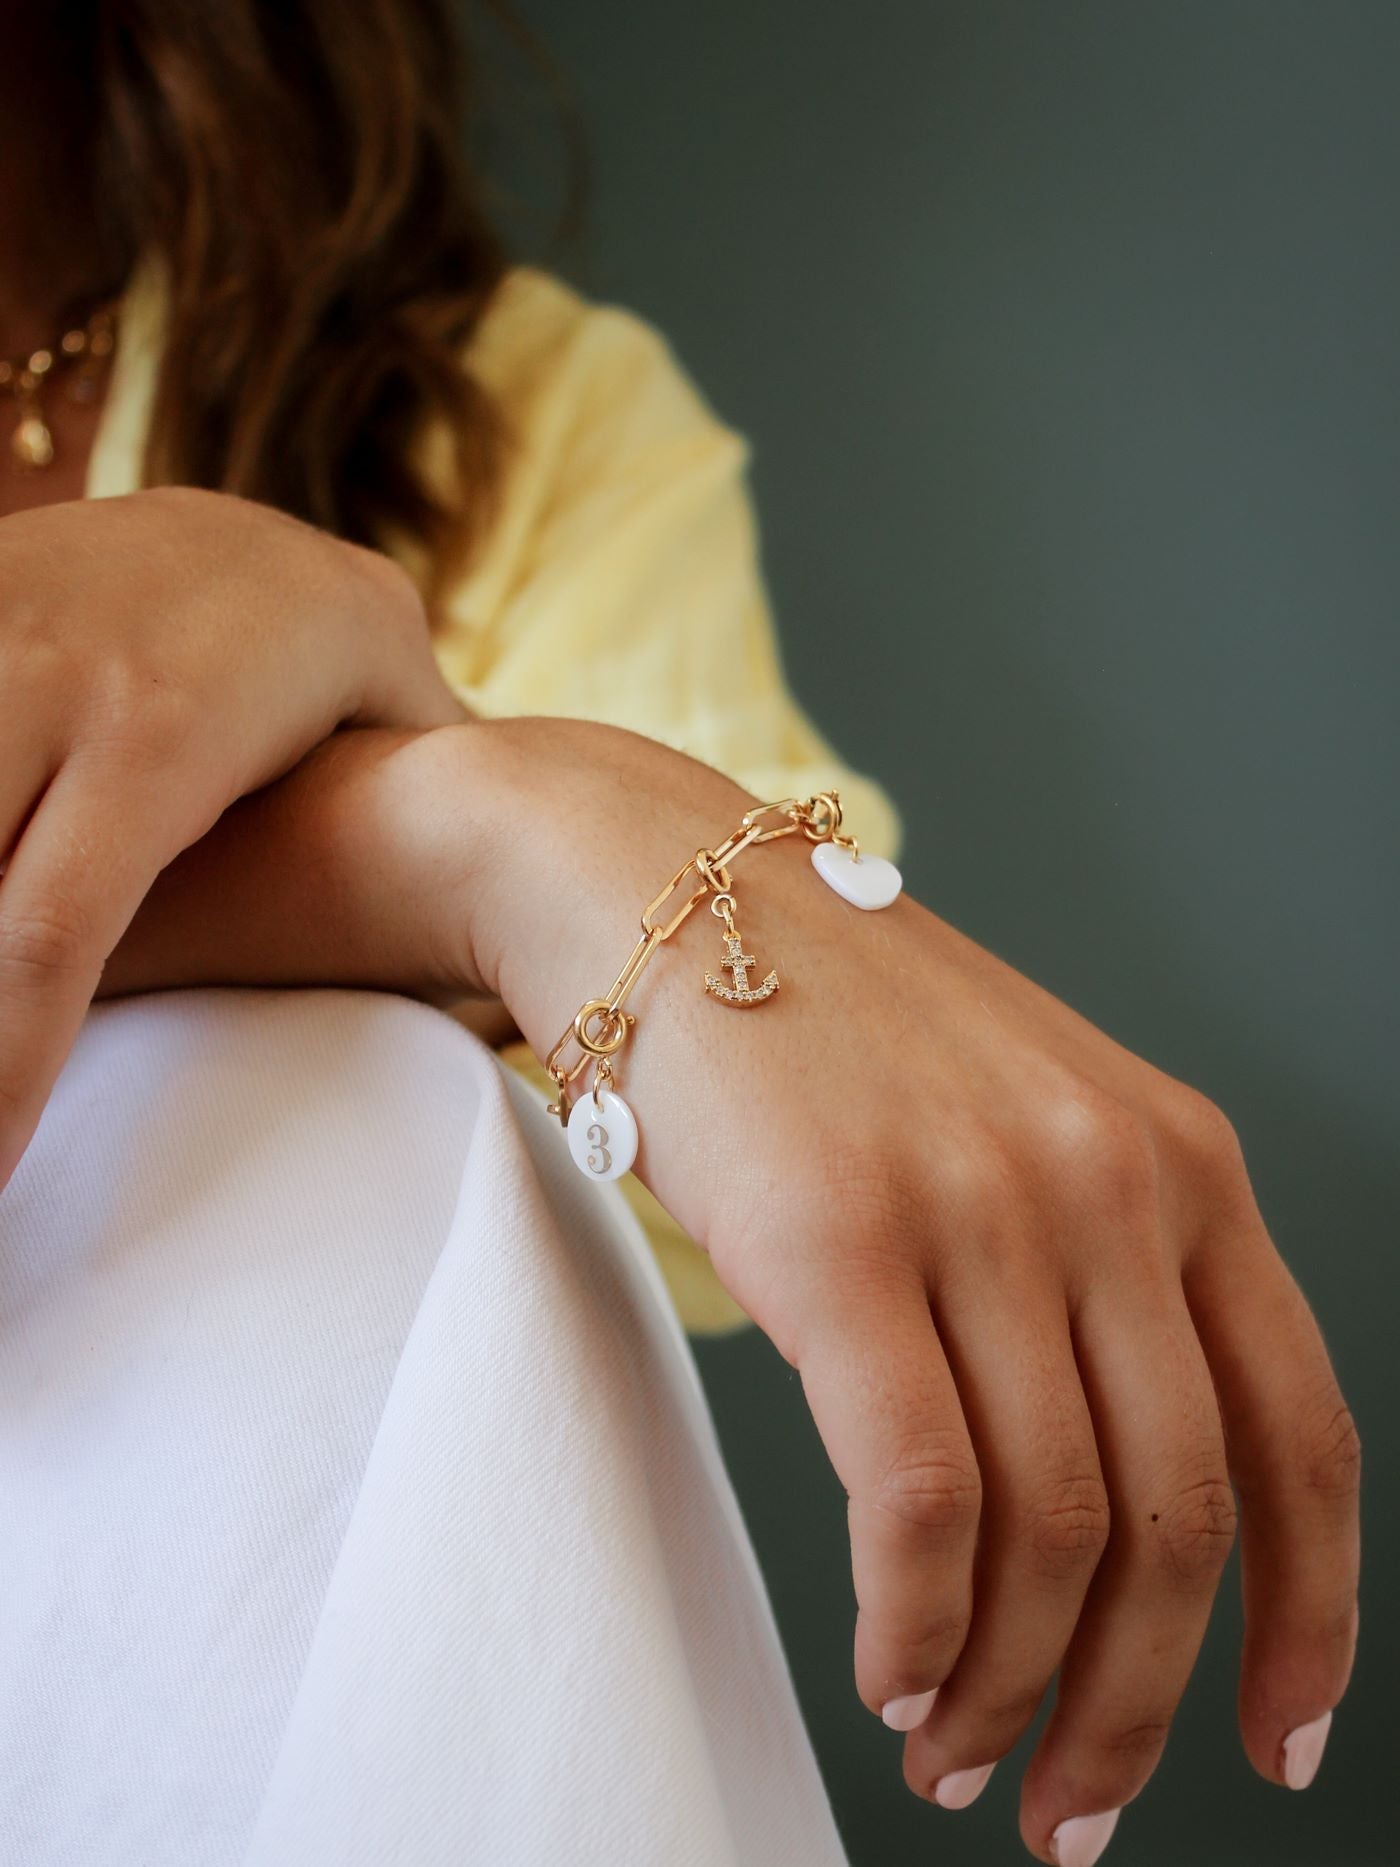 Bijoux dorés - Composition charms portée sur une base bracelet mailles rectangles - charms ancre, chiffre 3, coeur nacre - L'Atelier des Dames